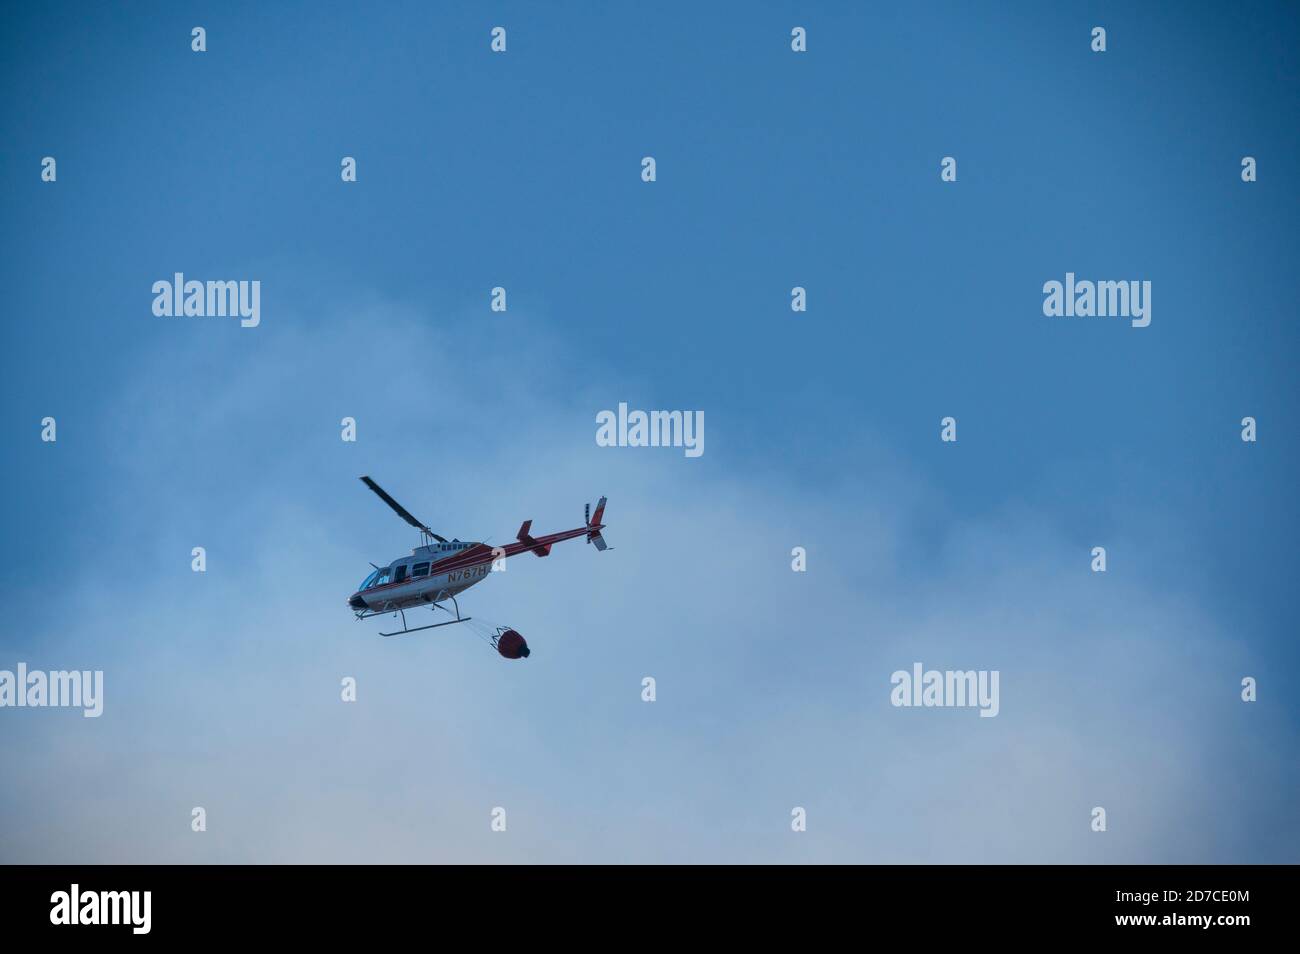 Hélicoptère de lutte contre l'incendie aérien avec seau d'eau de feu Banque D'Images